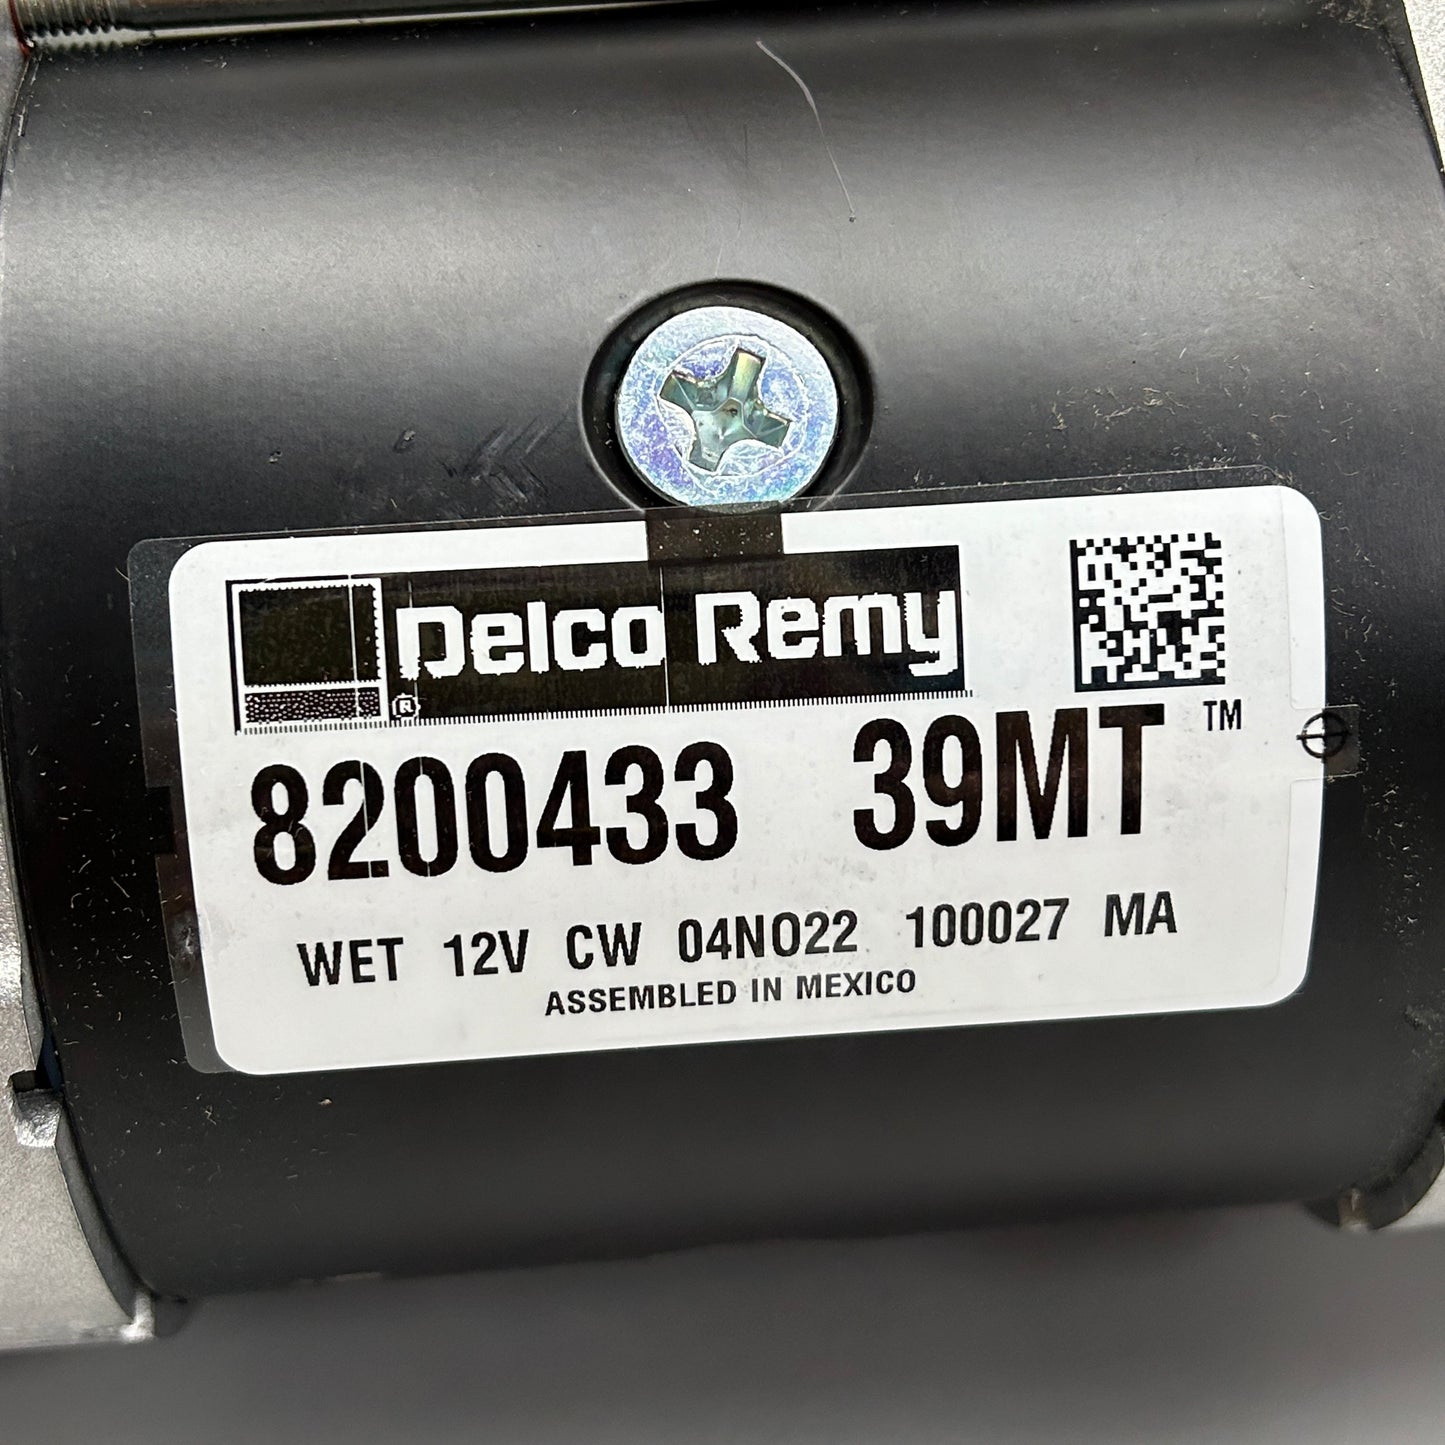 DELCO REMY Motor 39MT 12V 8200433 (New)